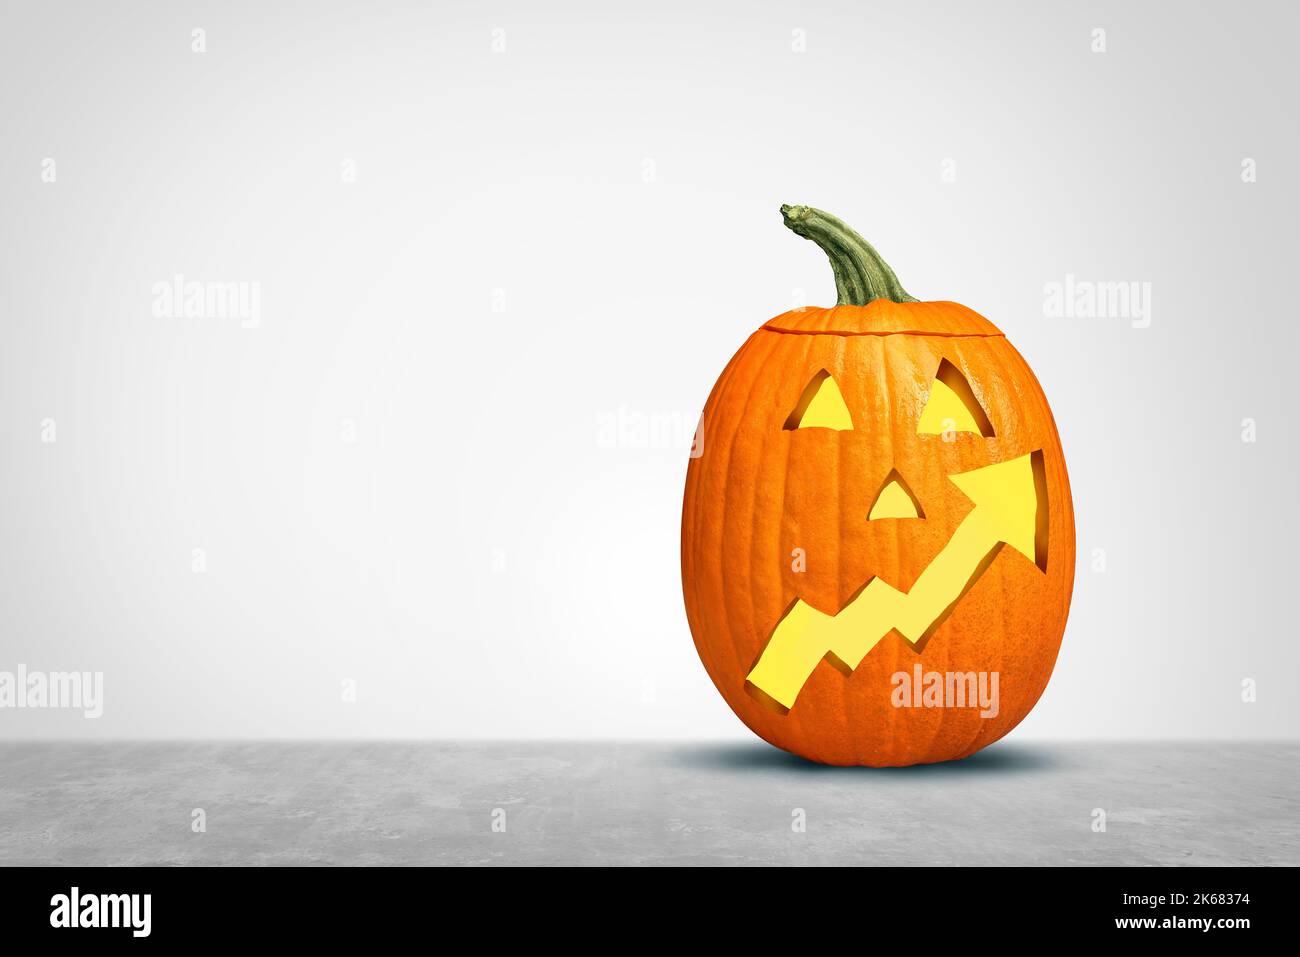 Inflationskonzept für die Halloween-Saison als Herbstkürbis-Symbol mit einem nach oben gelehnten Pfeil der Finanzkarte, der steigende Preise der Herbstsaison darstellt. Stockfoto